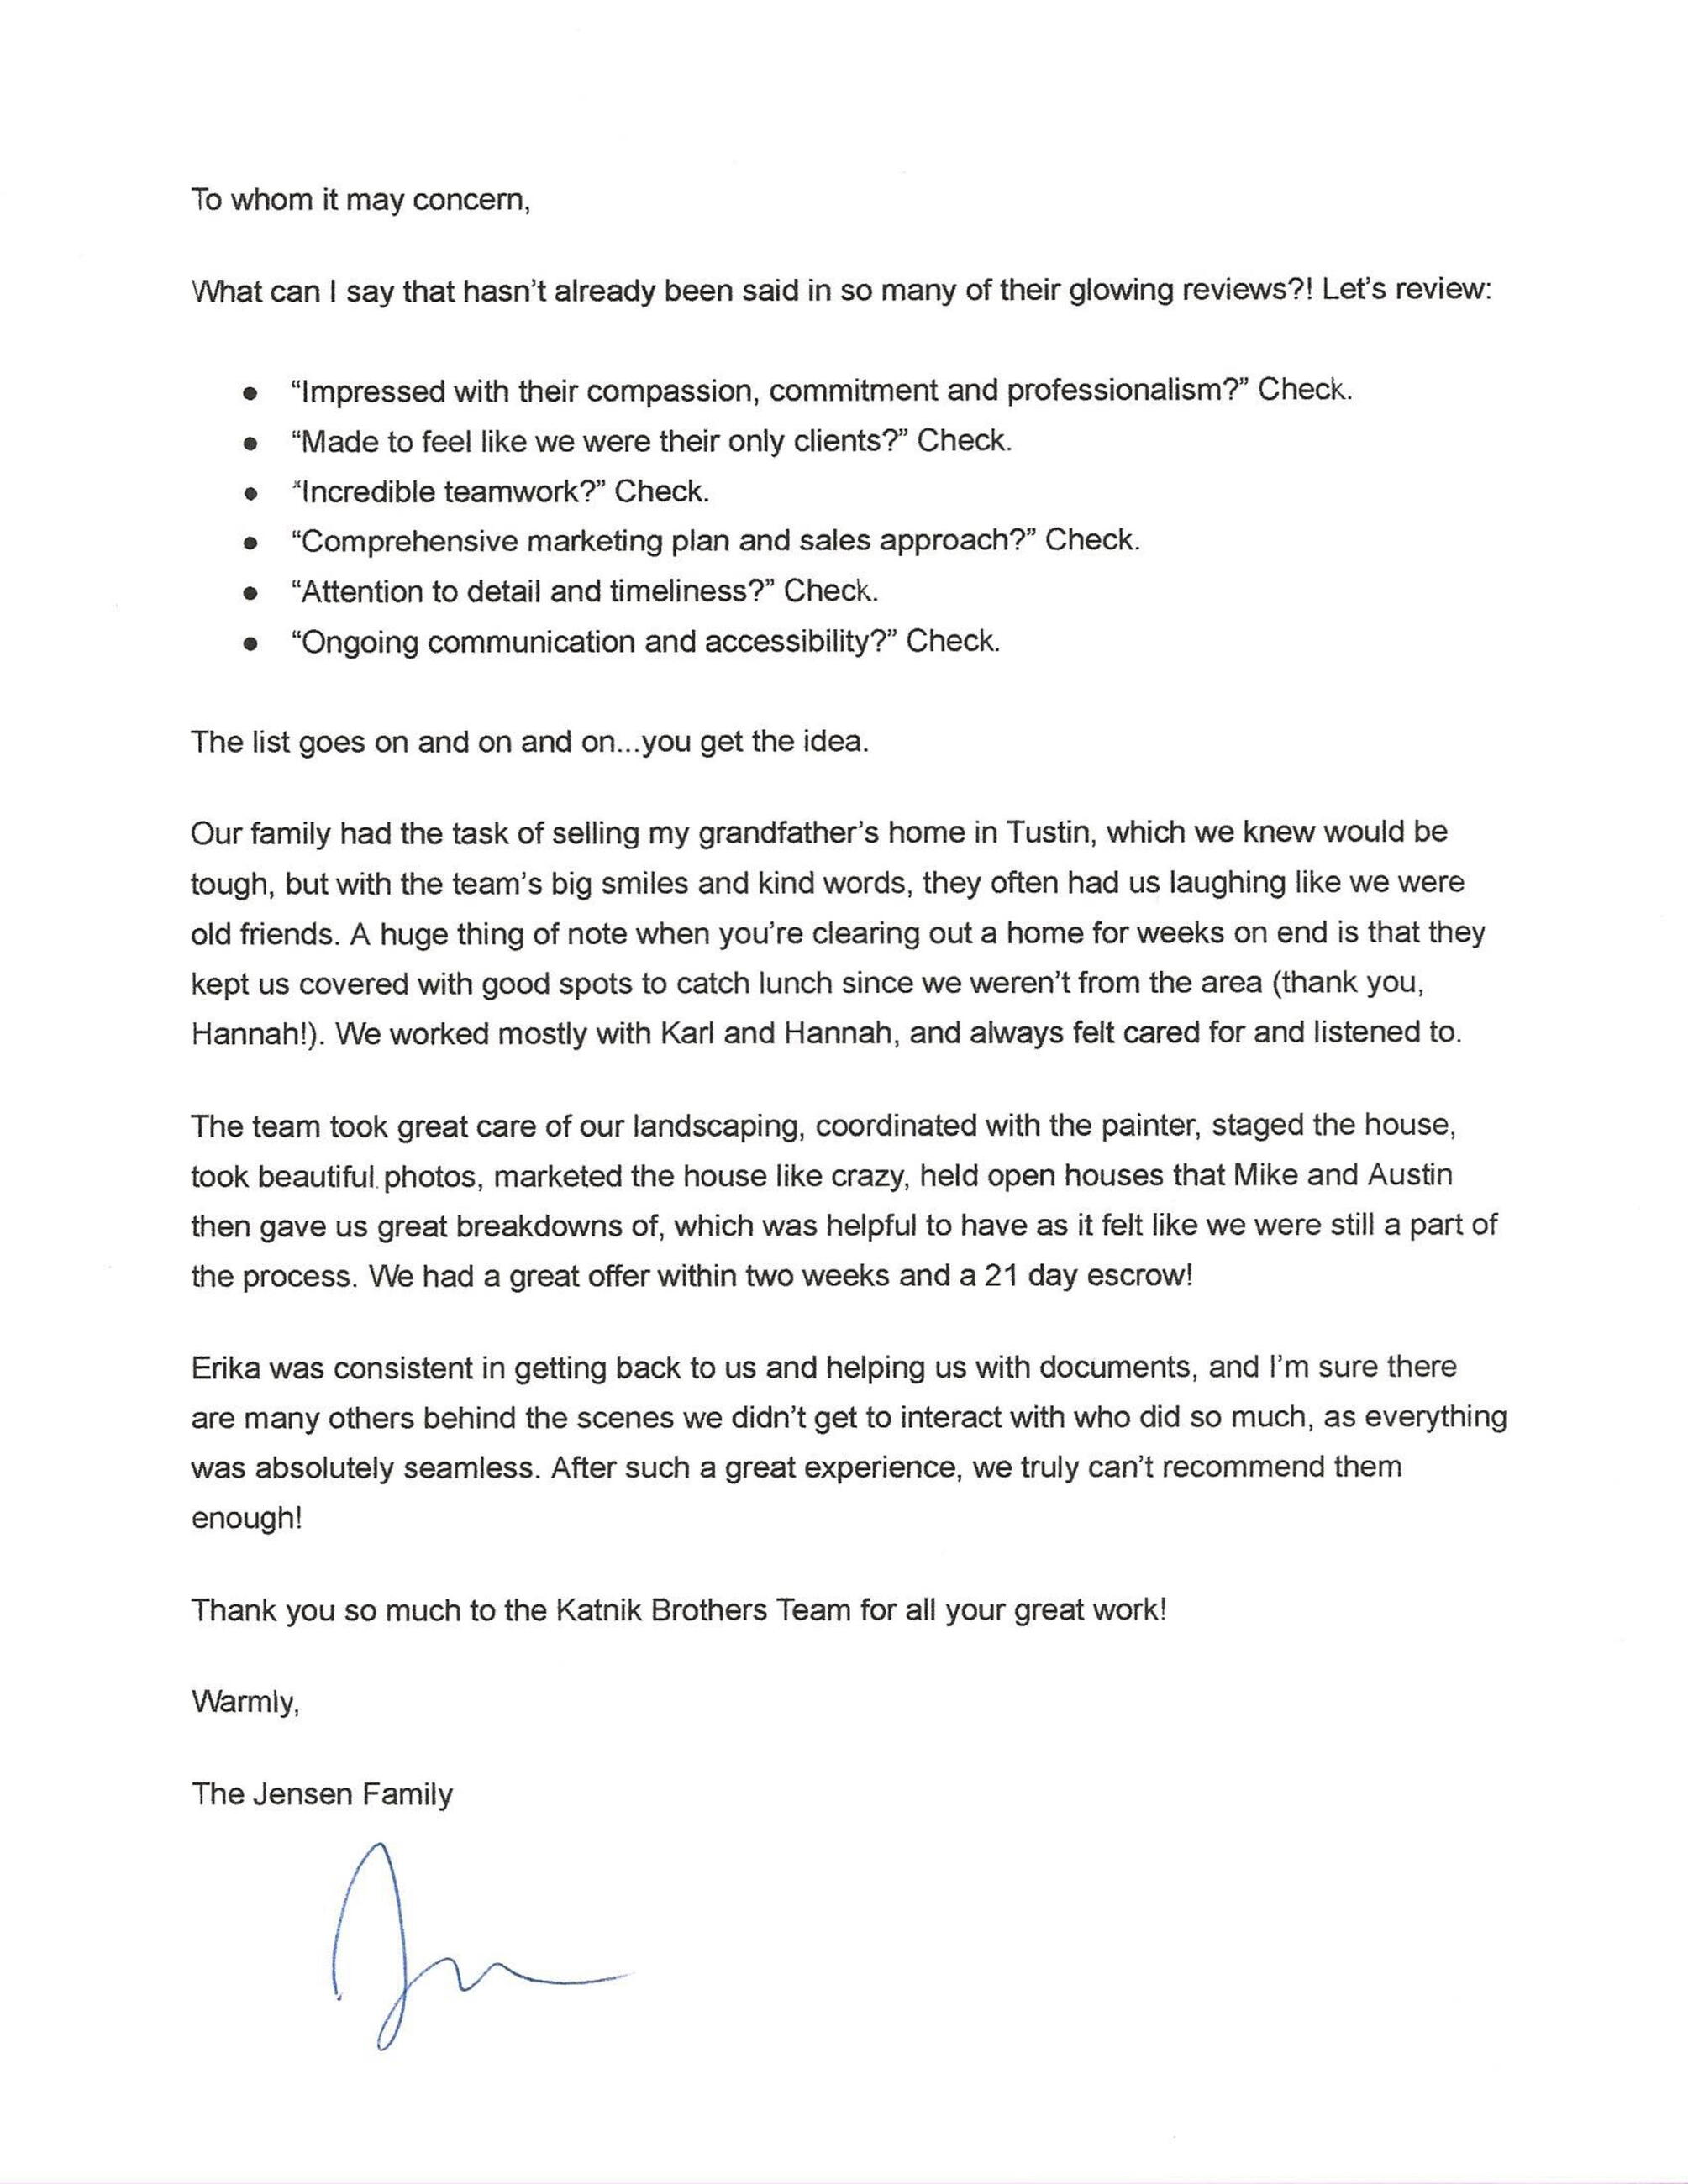 Jensen Family Letter